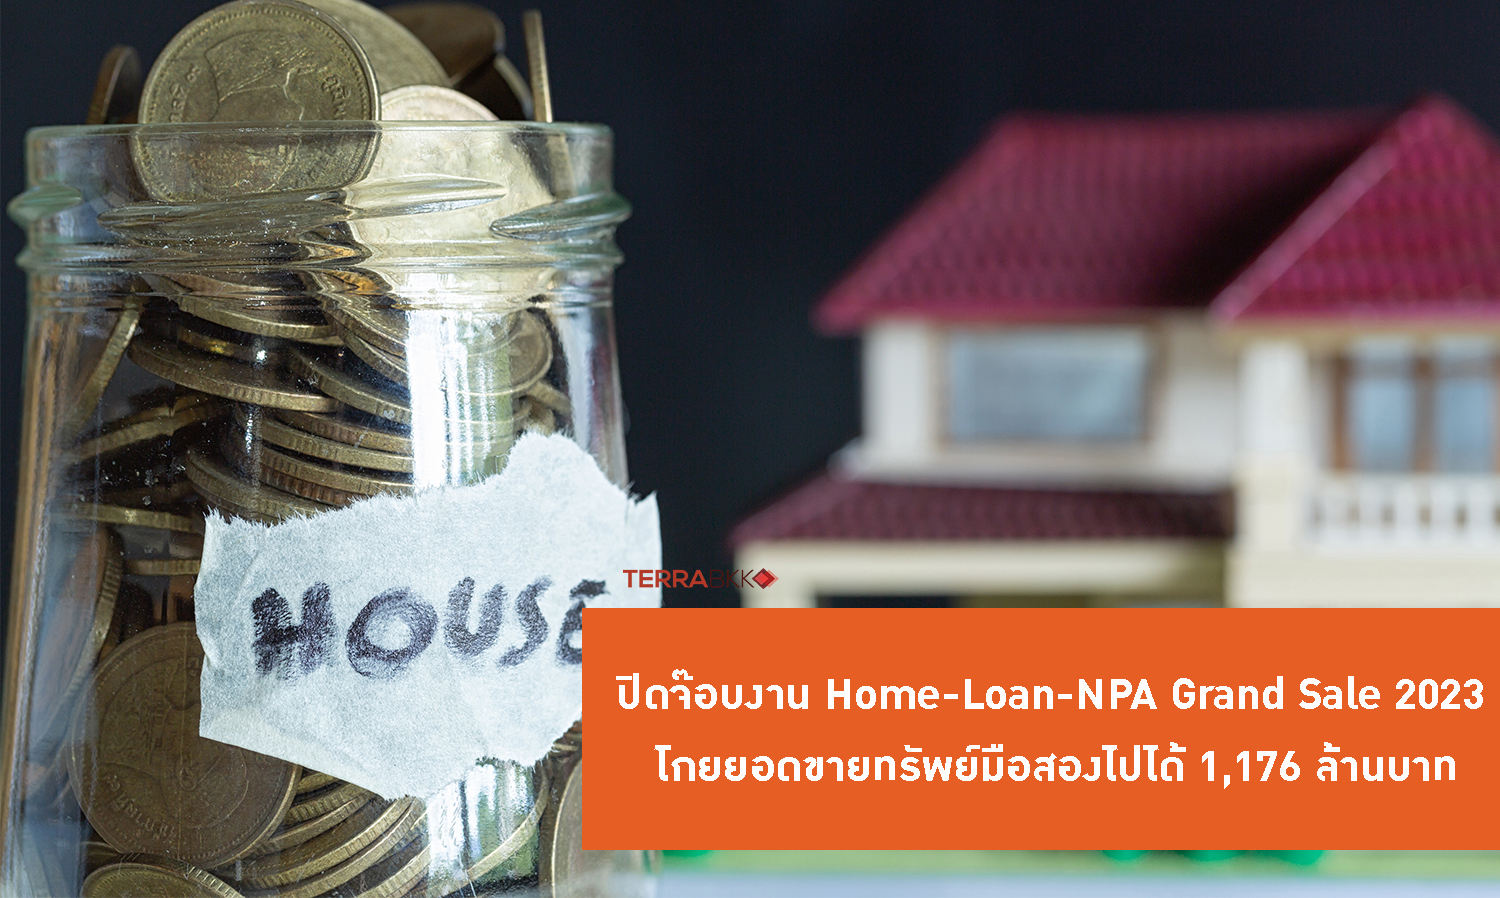 ปิดจ๊อบงาน Home-Loan-NPA Grand Sale 2023 โกยยอดขายทรัพย์มือสองไปได้ 1,176 ล้านบาท